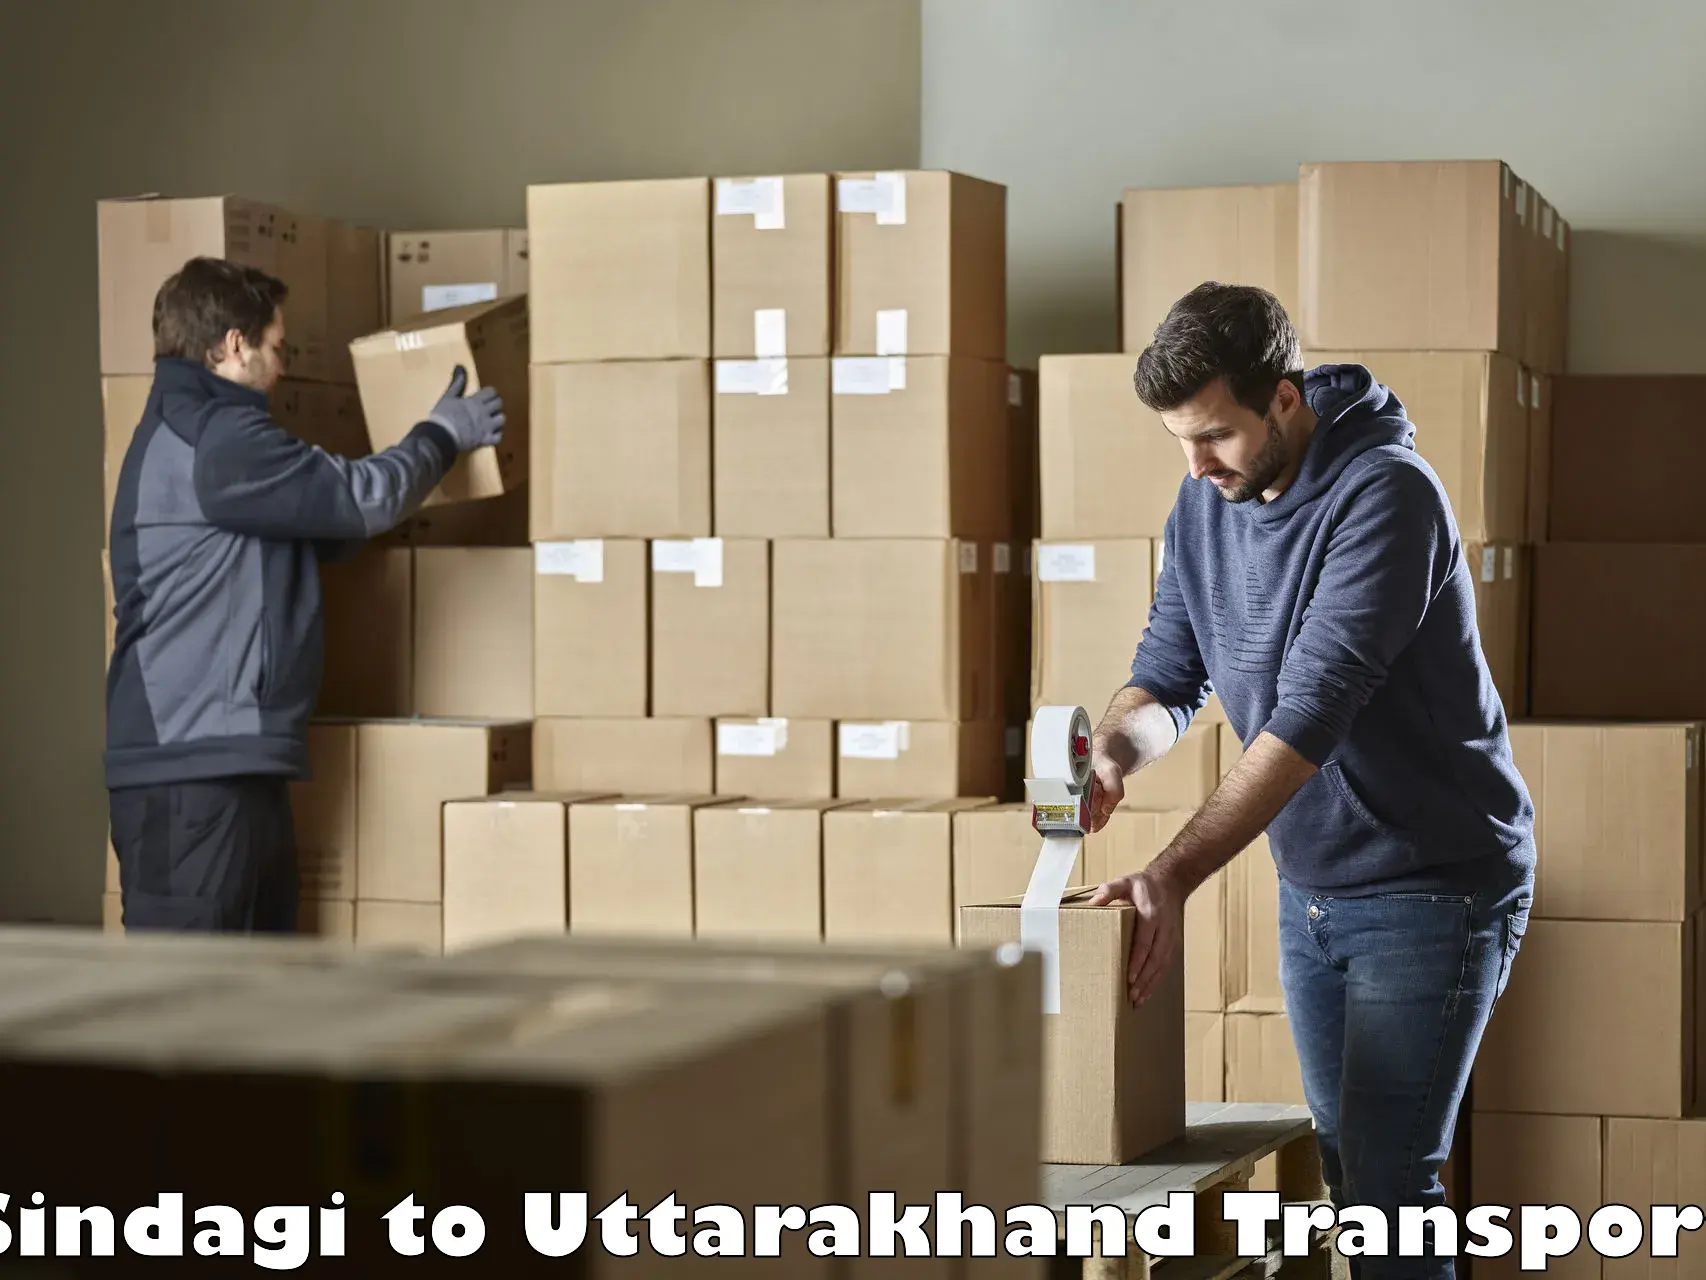 Commercial transport service Sindagi to Uttarakhand